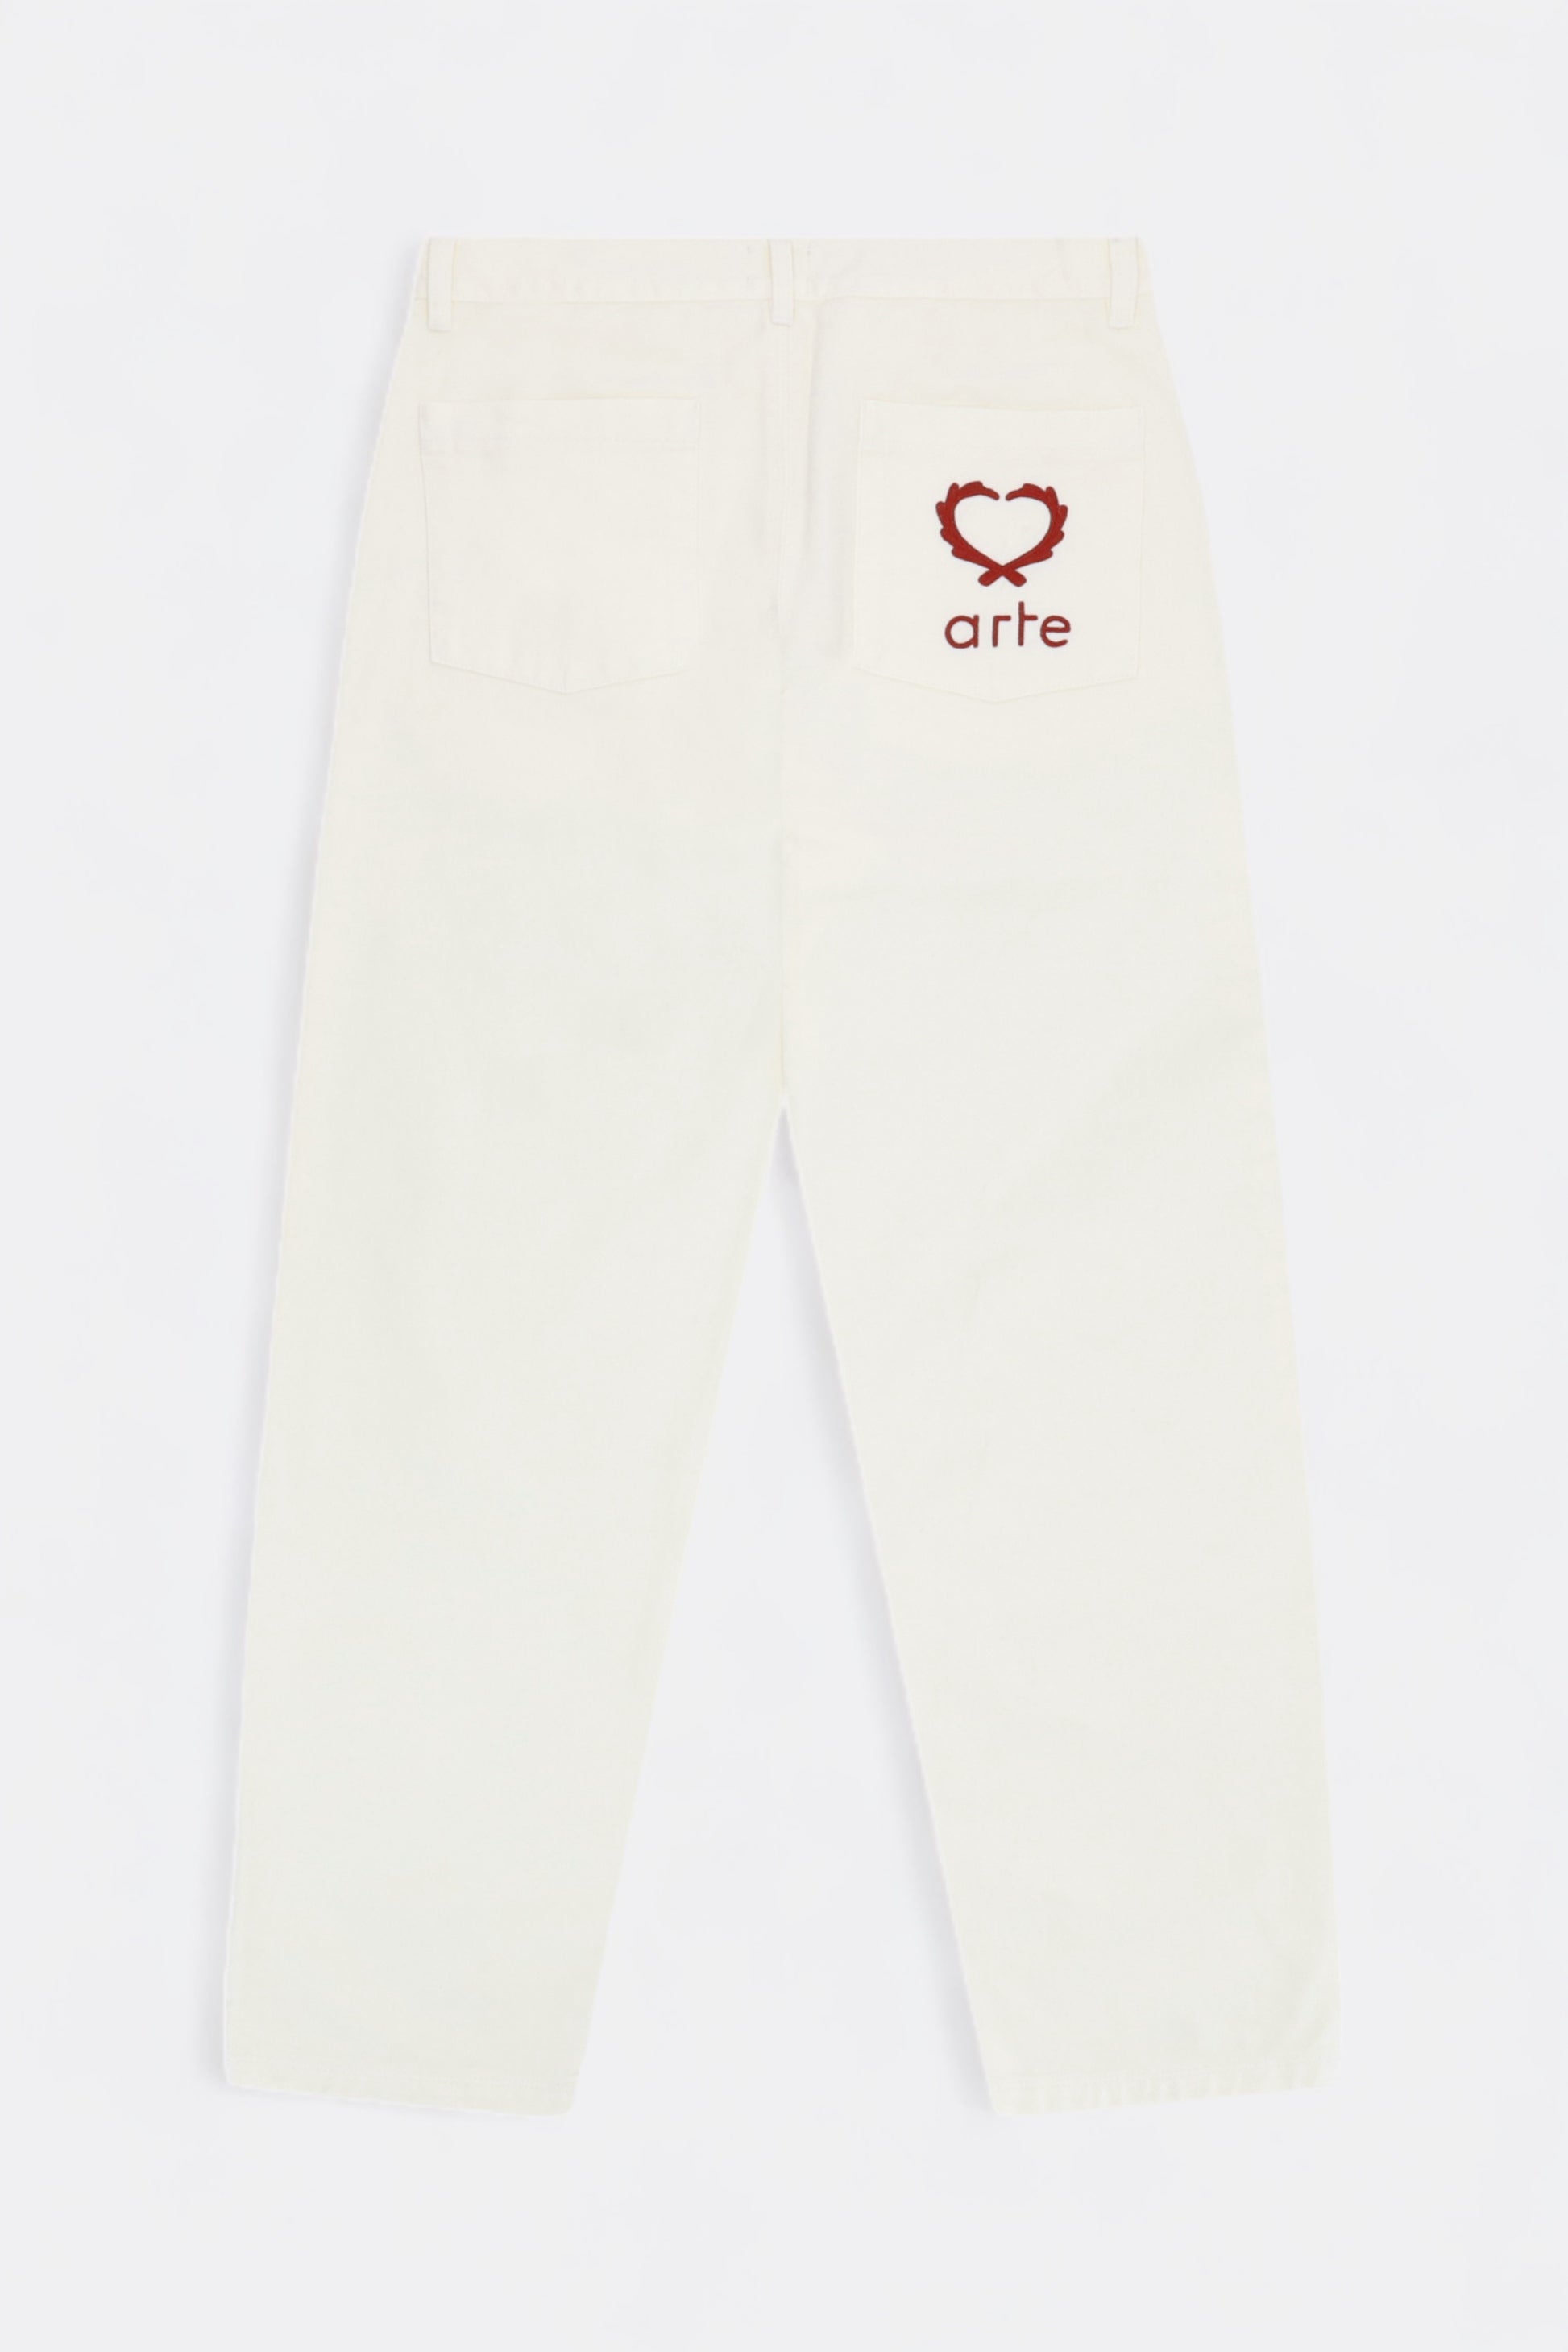 Arte - Poage Back Heart Pants (Cream)